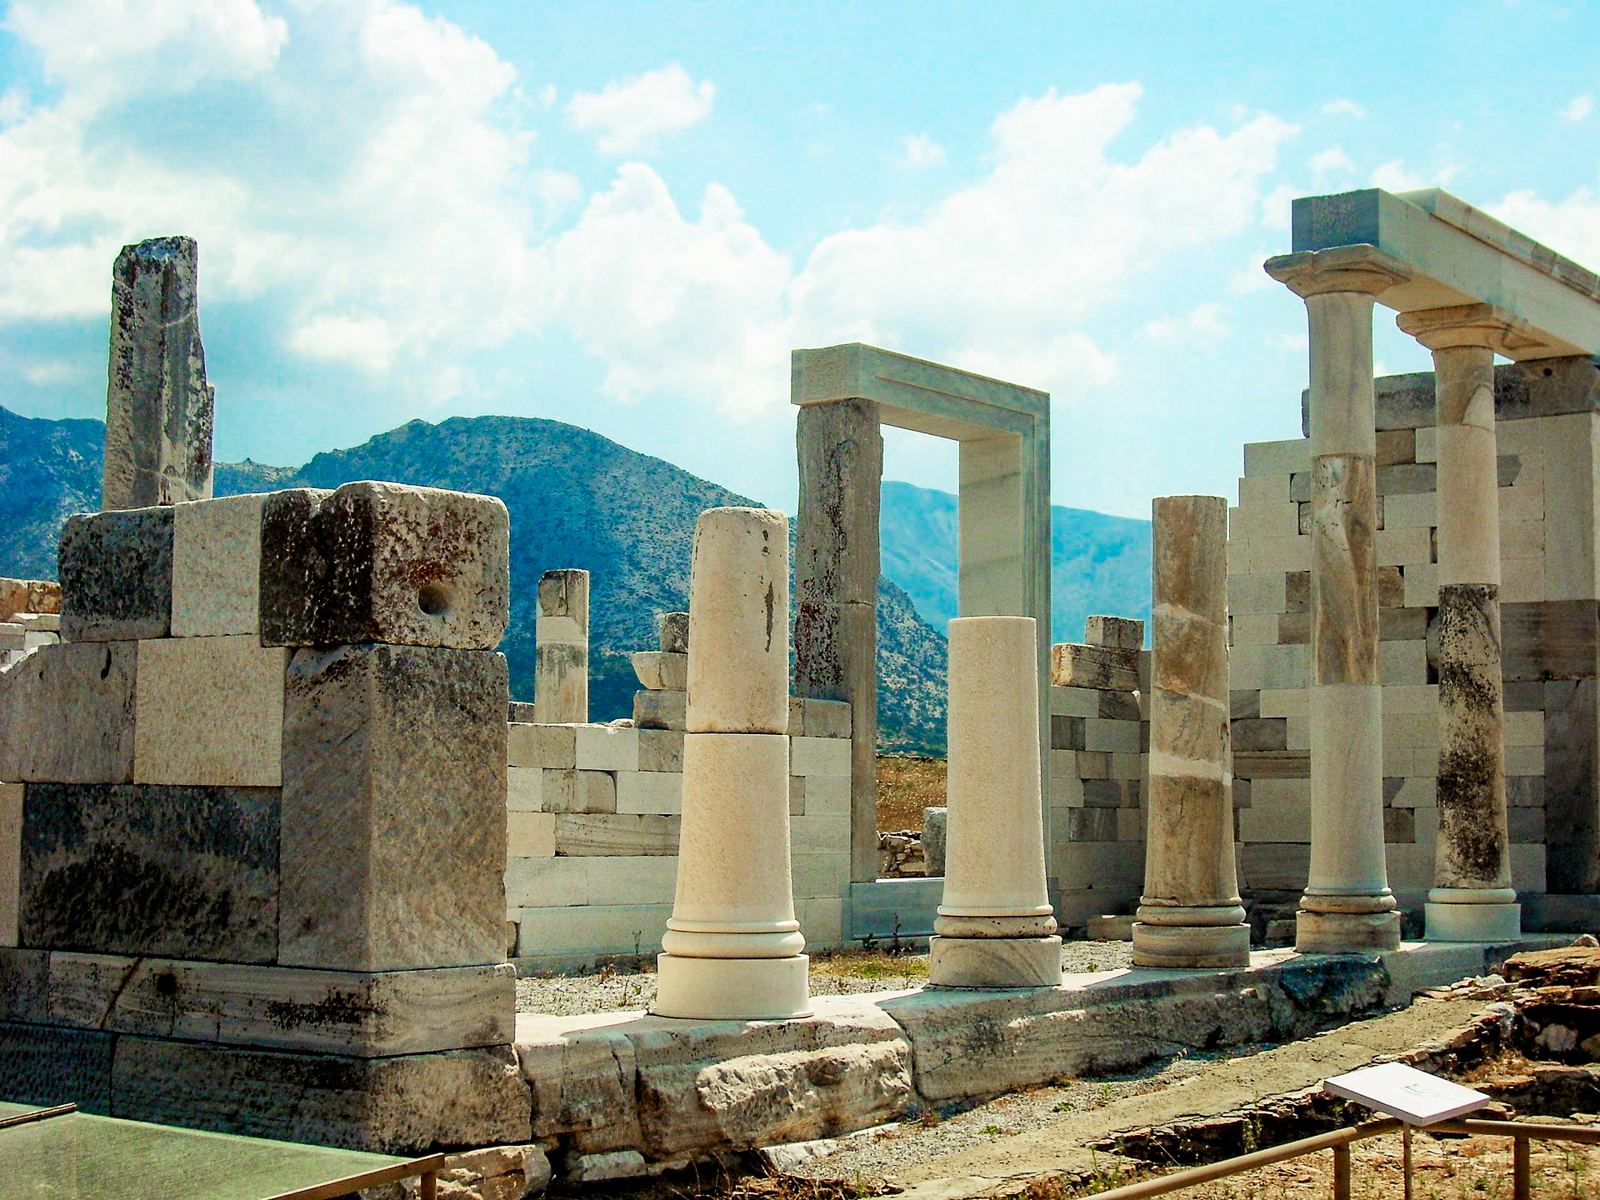 Ruins on Delos Island off the coast of Mykonos